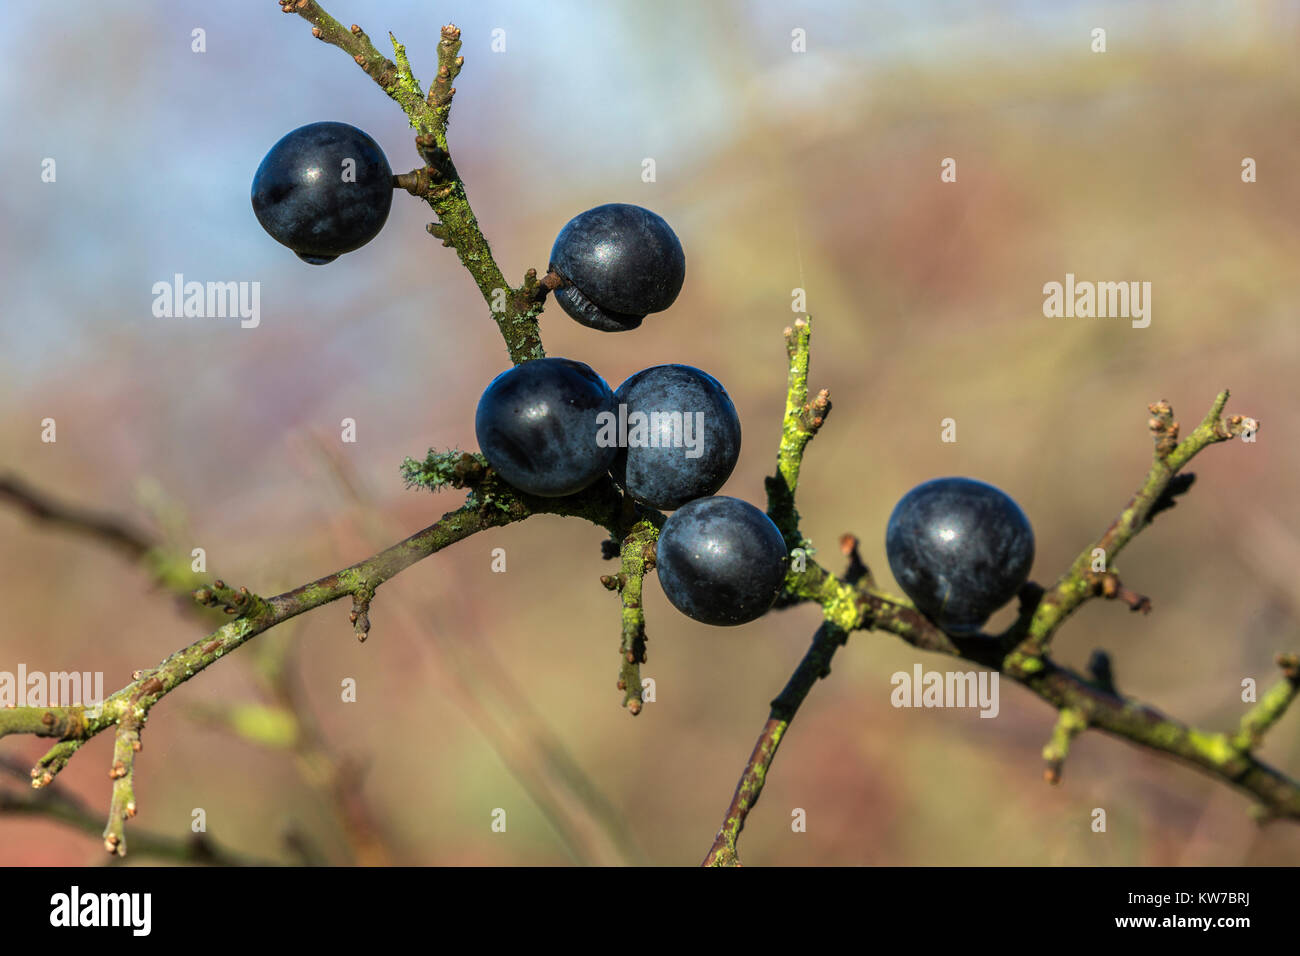 Lent (prunellier) petits fruits (Prunus spinosa), Wildfowl & Wetlands Trust Caerlaverock réserver, Dumfries et Galloway, Écosse, Royaume-Uni, novembre 2017 Banque D'Images